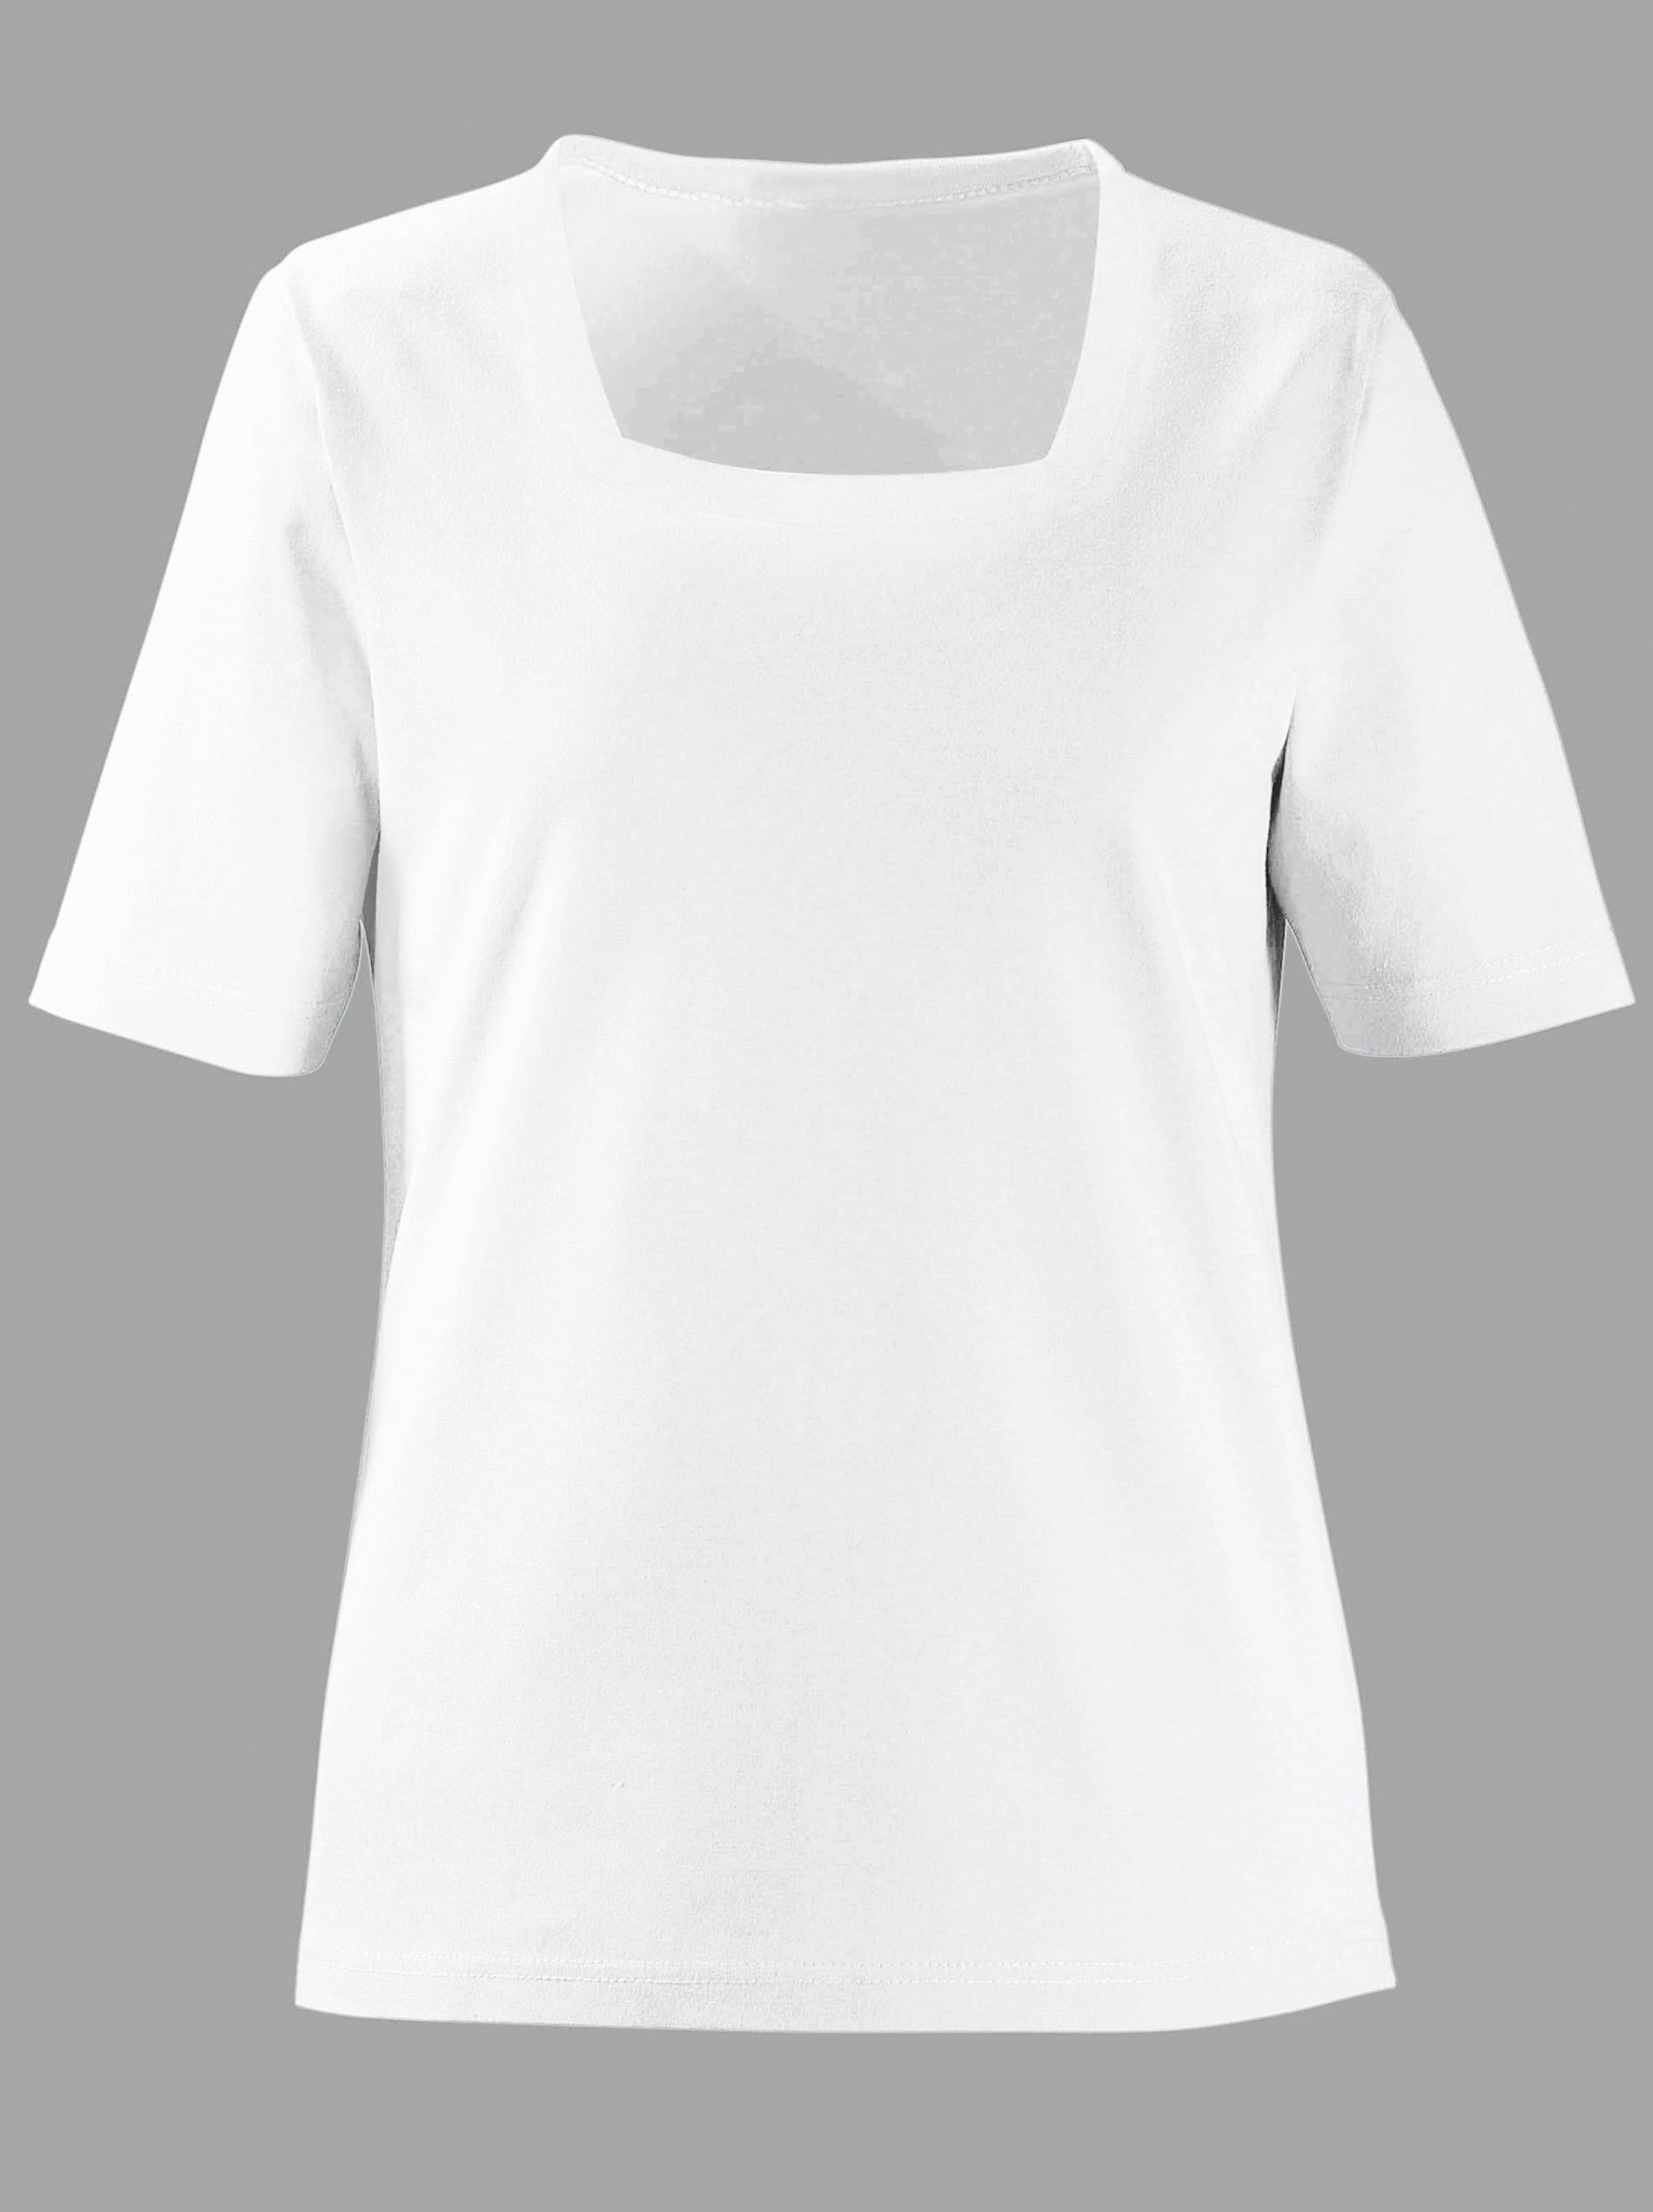 Damenmode Shirts Kurzarmshirt in weiß 